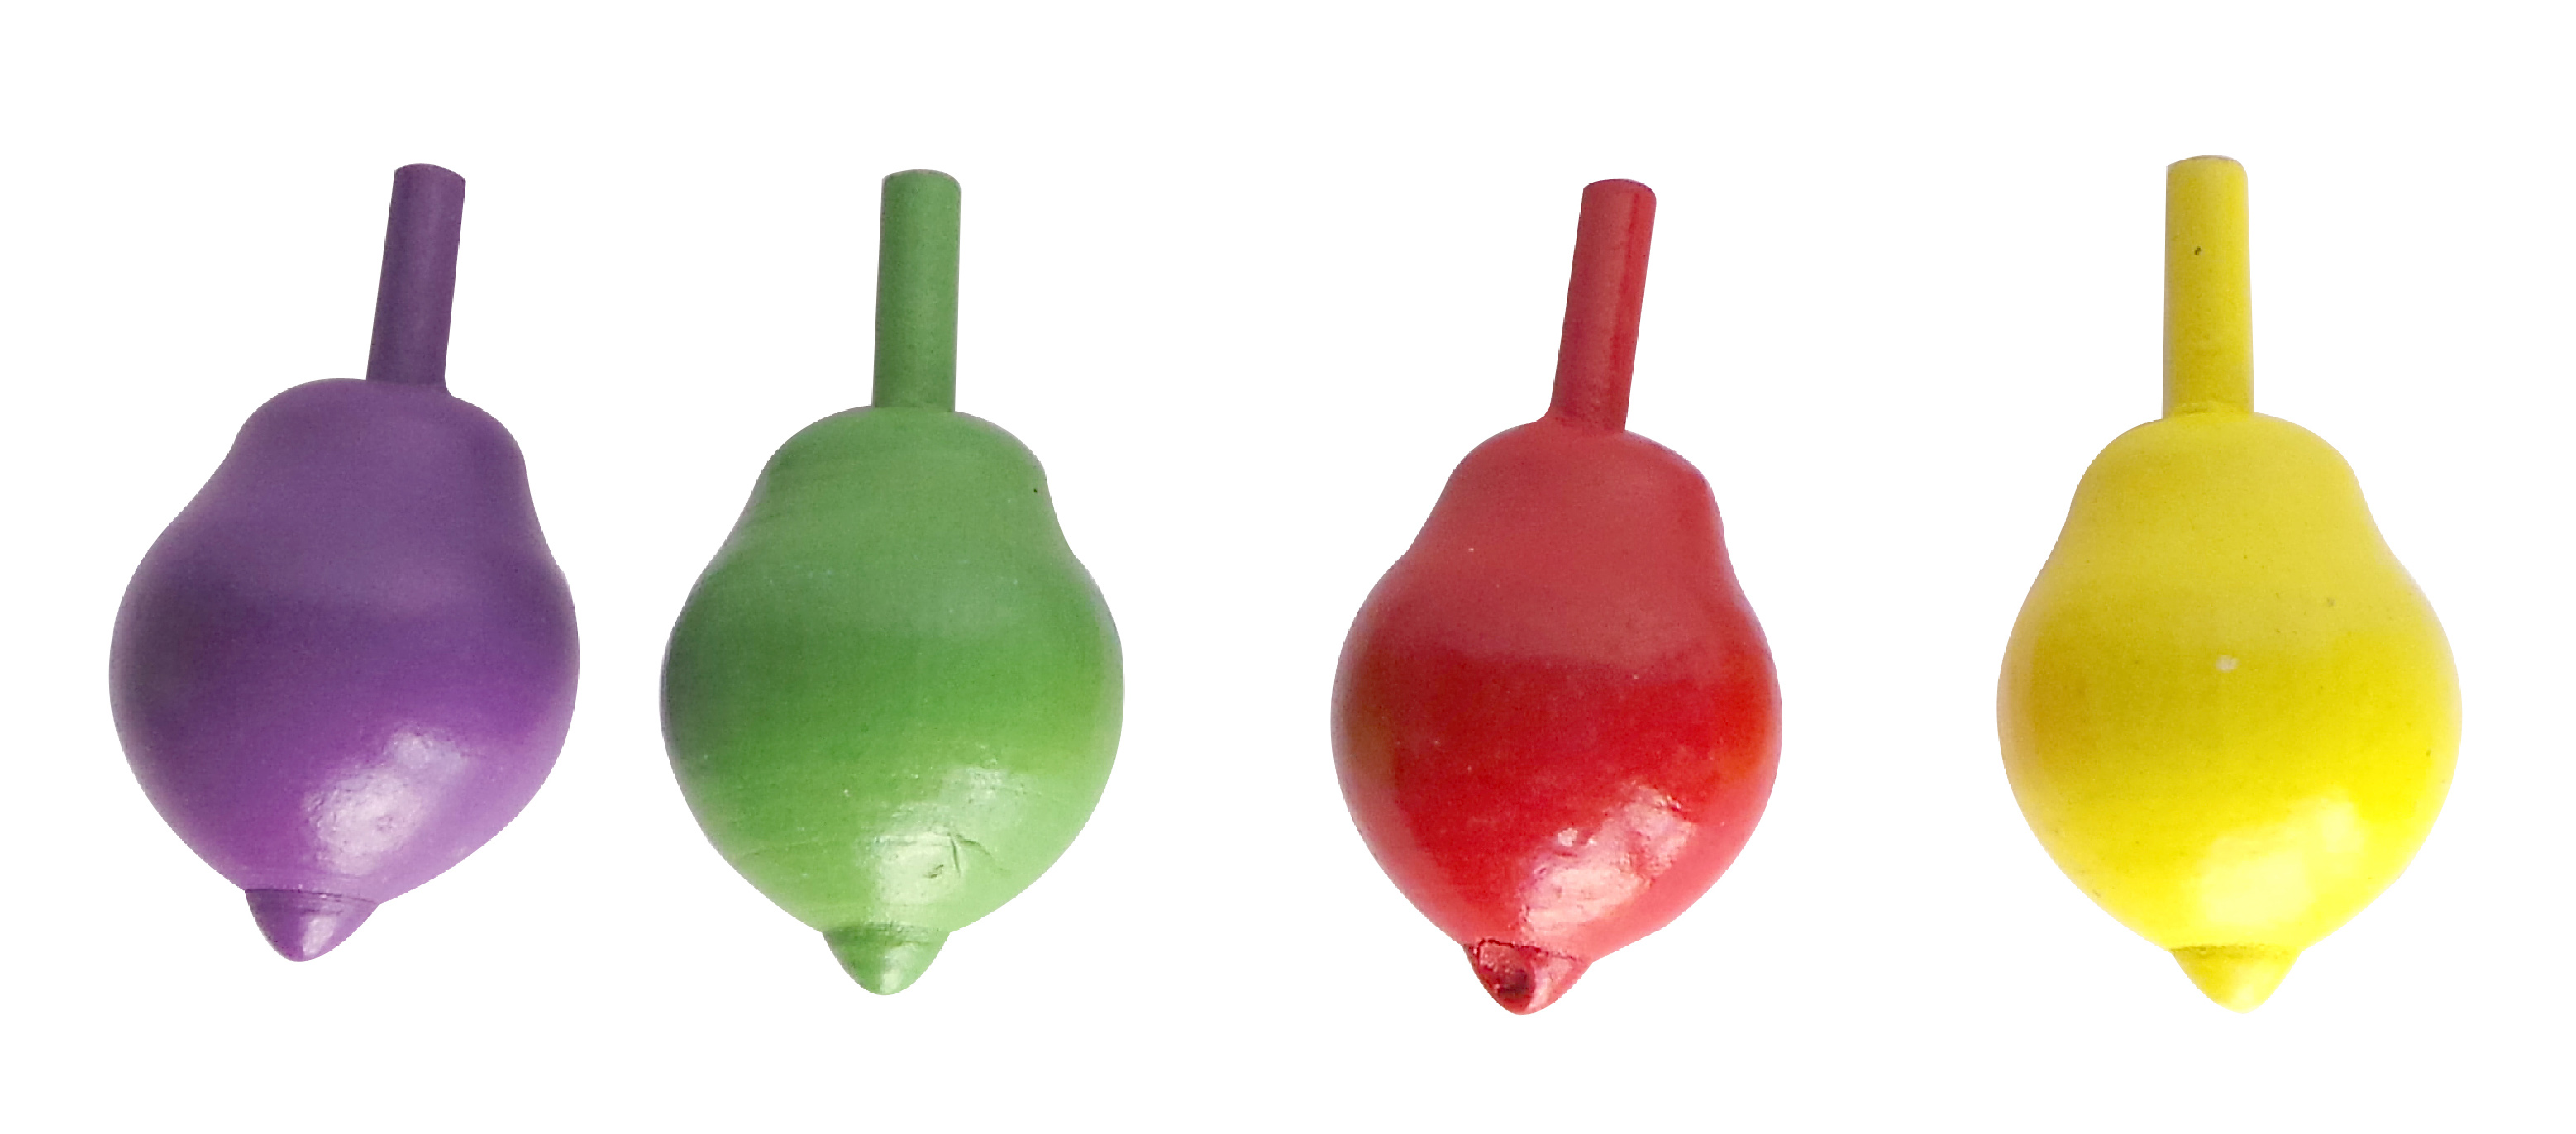 Волчок фрукты. Волчок 5.5. Пластиковая игрушка волчок зеленая цвета логопедический для детей. Фруктовый см